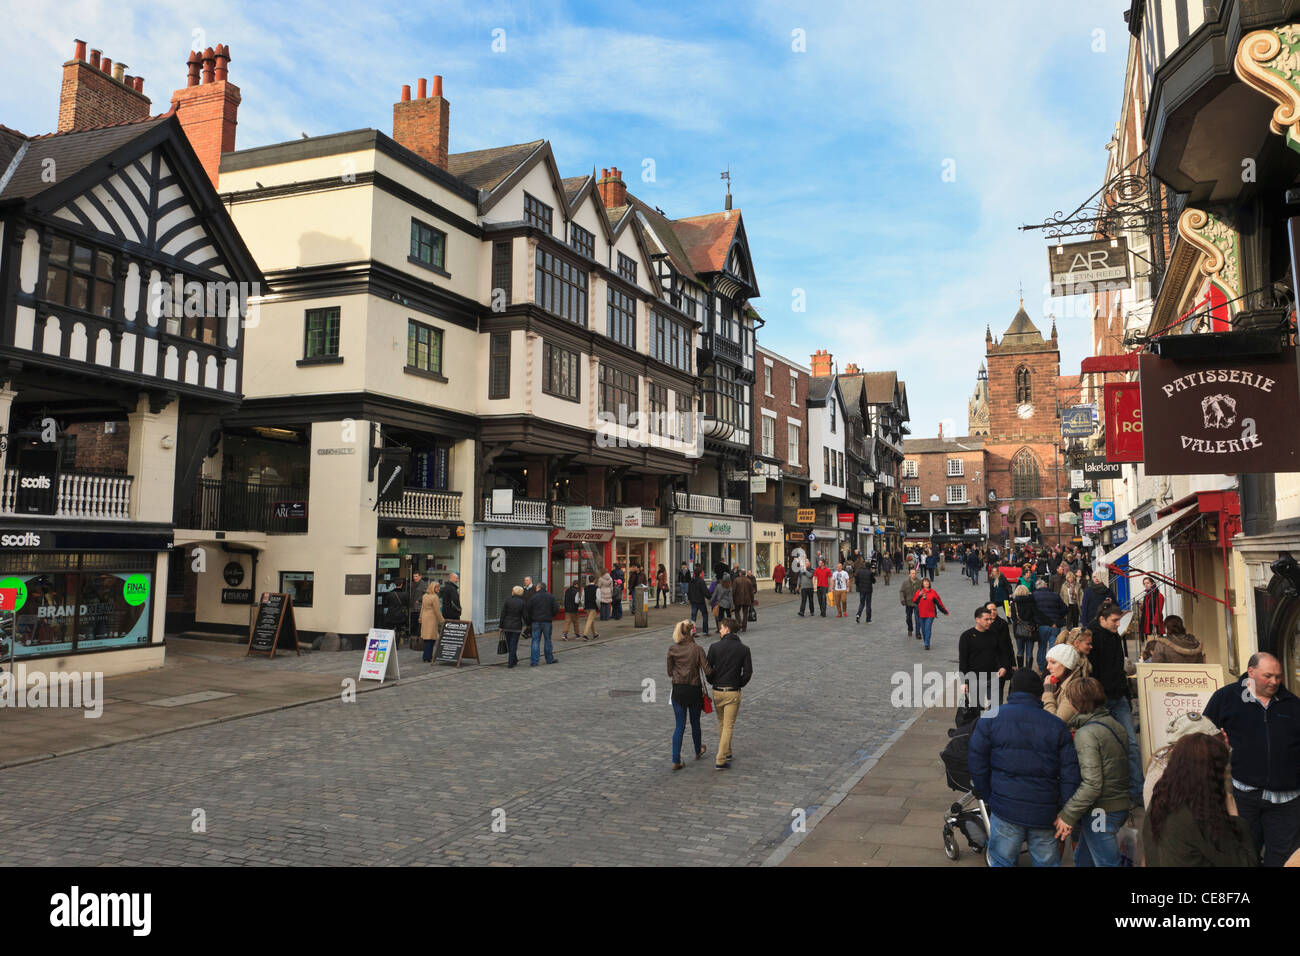 Belebten Fußgängerzone, gepflasterten Straßenszene mit Läden in historischen Tudor Gebäude im Zentrum der Stadt. Brücke Straße Chester Cheshire England UK. Stockfoto